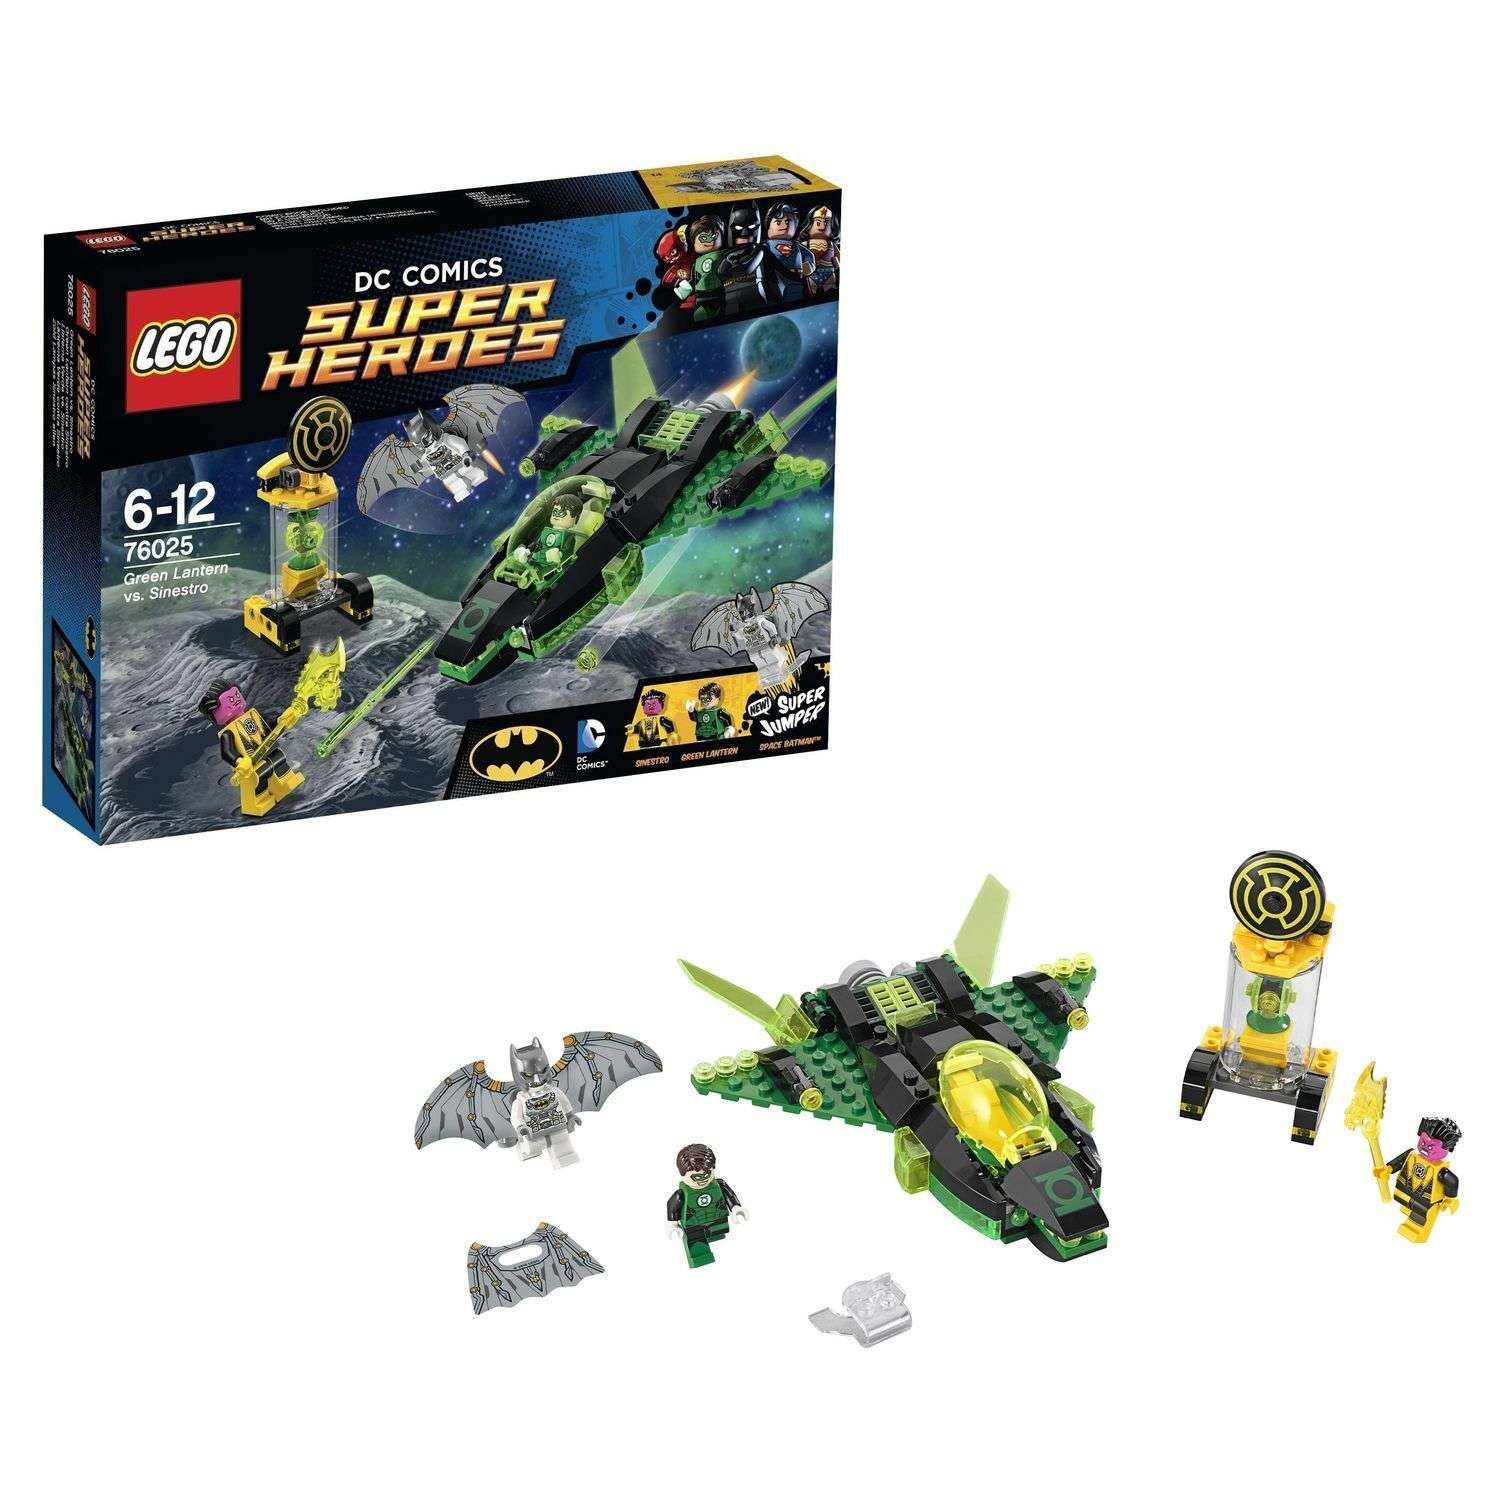 Конструктор LEGO Super Heroes Зеленый Фонарь против Синестро (76025) - фото 1